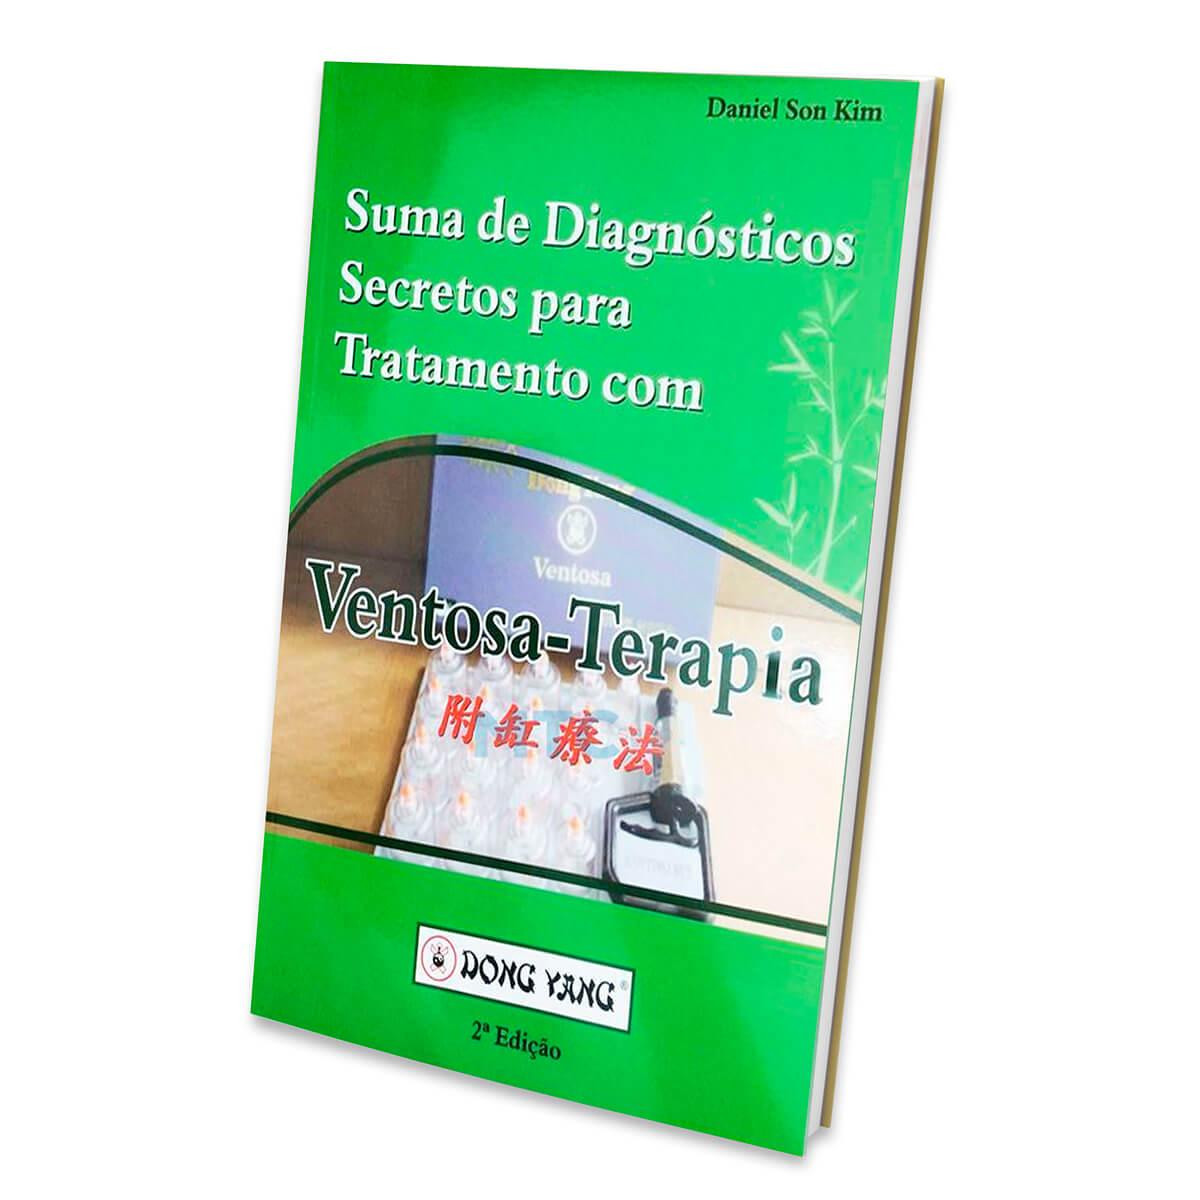 Suma de Diagnósticos Secretos para Tratamento com Ventosa-Terapia 2ª Edição - Dong Yang